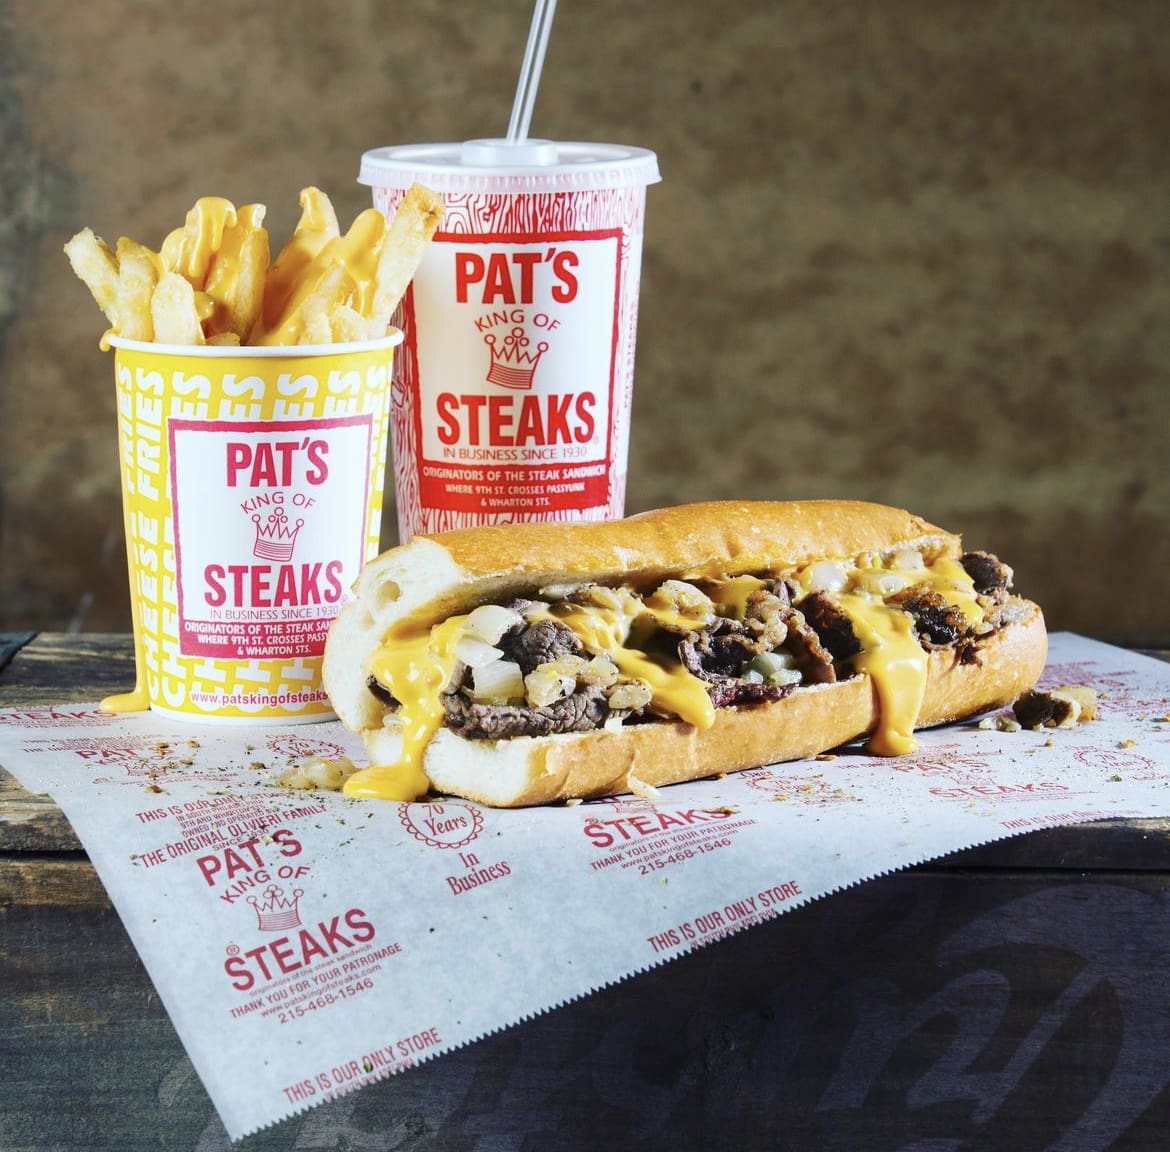 Pat’s King of Steaks